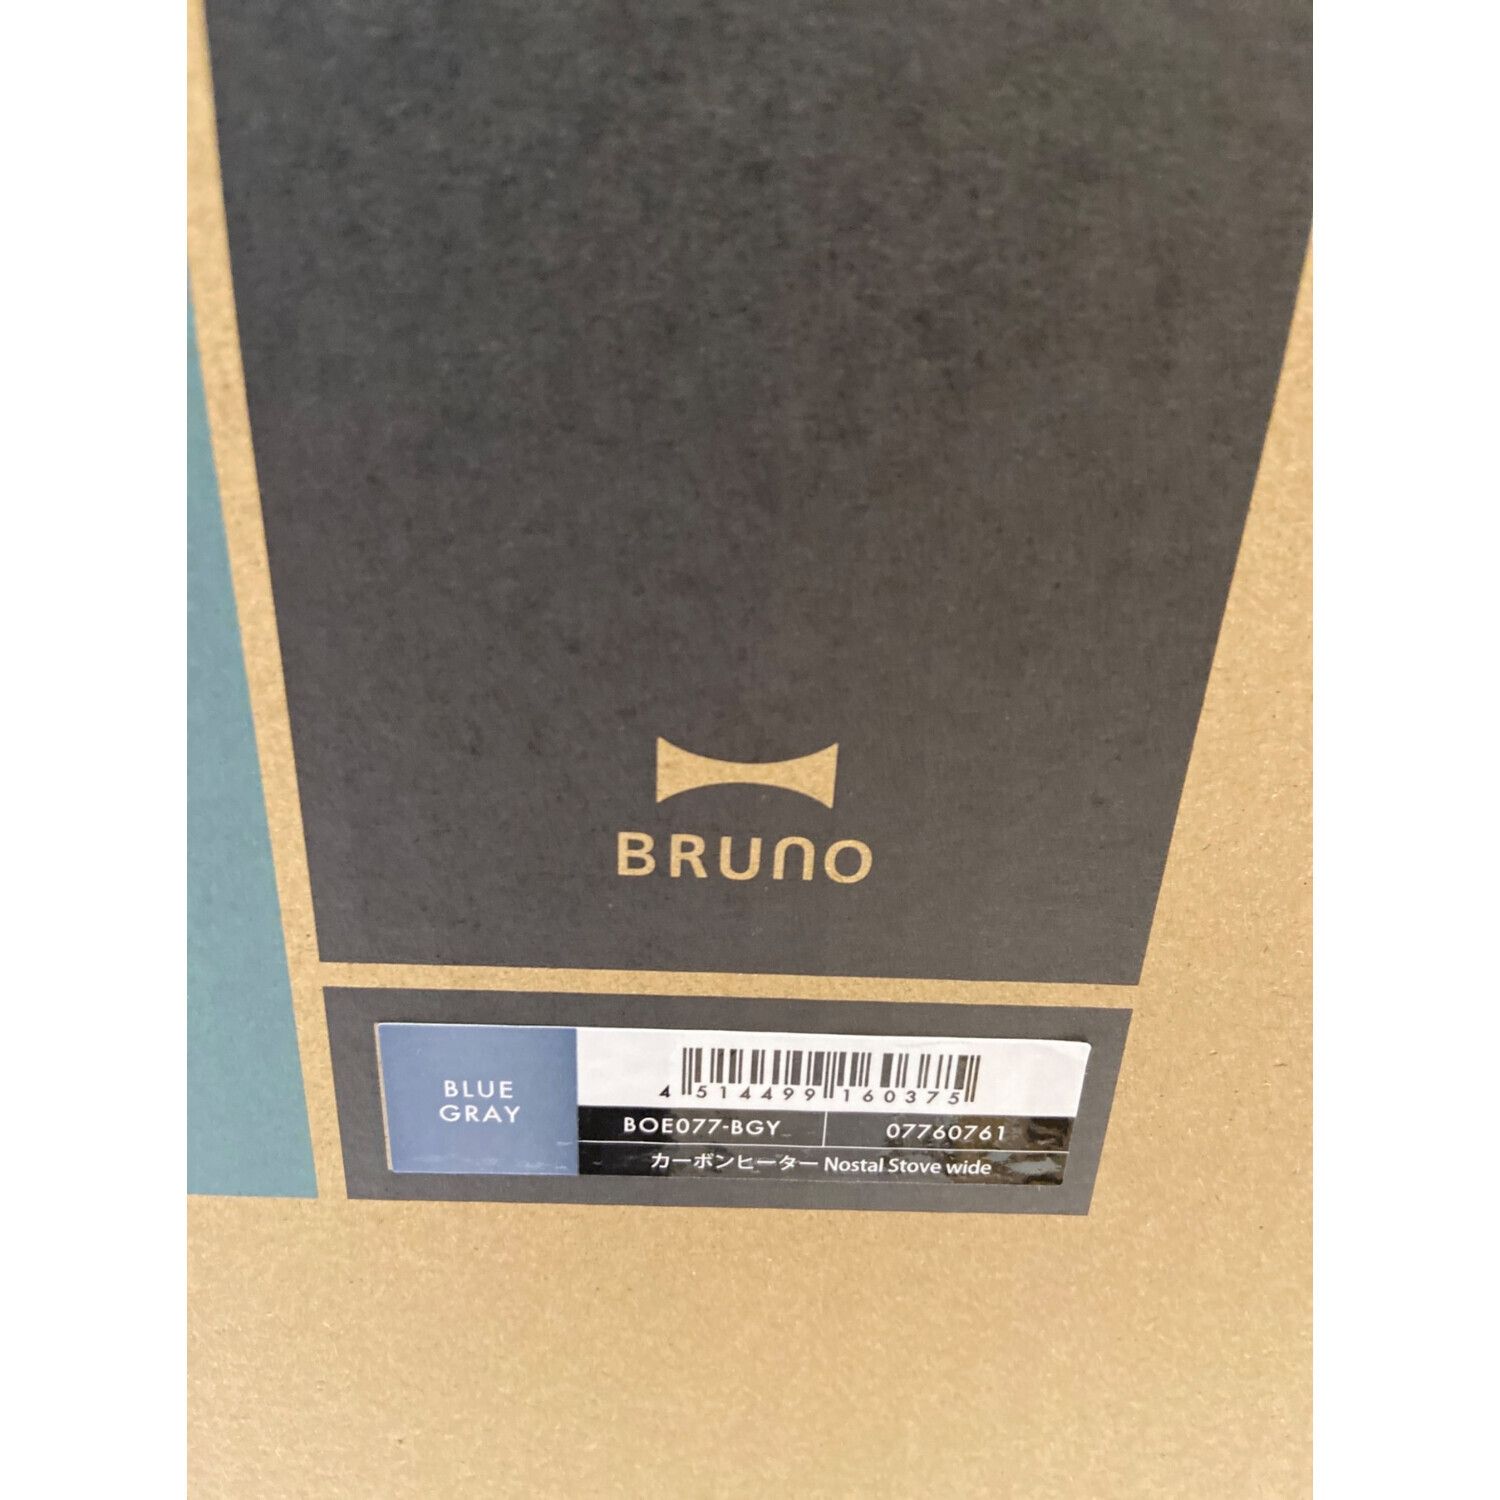 BRUNO (ブルーノ) カーボンヒーター BOE077-BGY アウトレット品